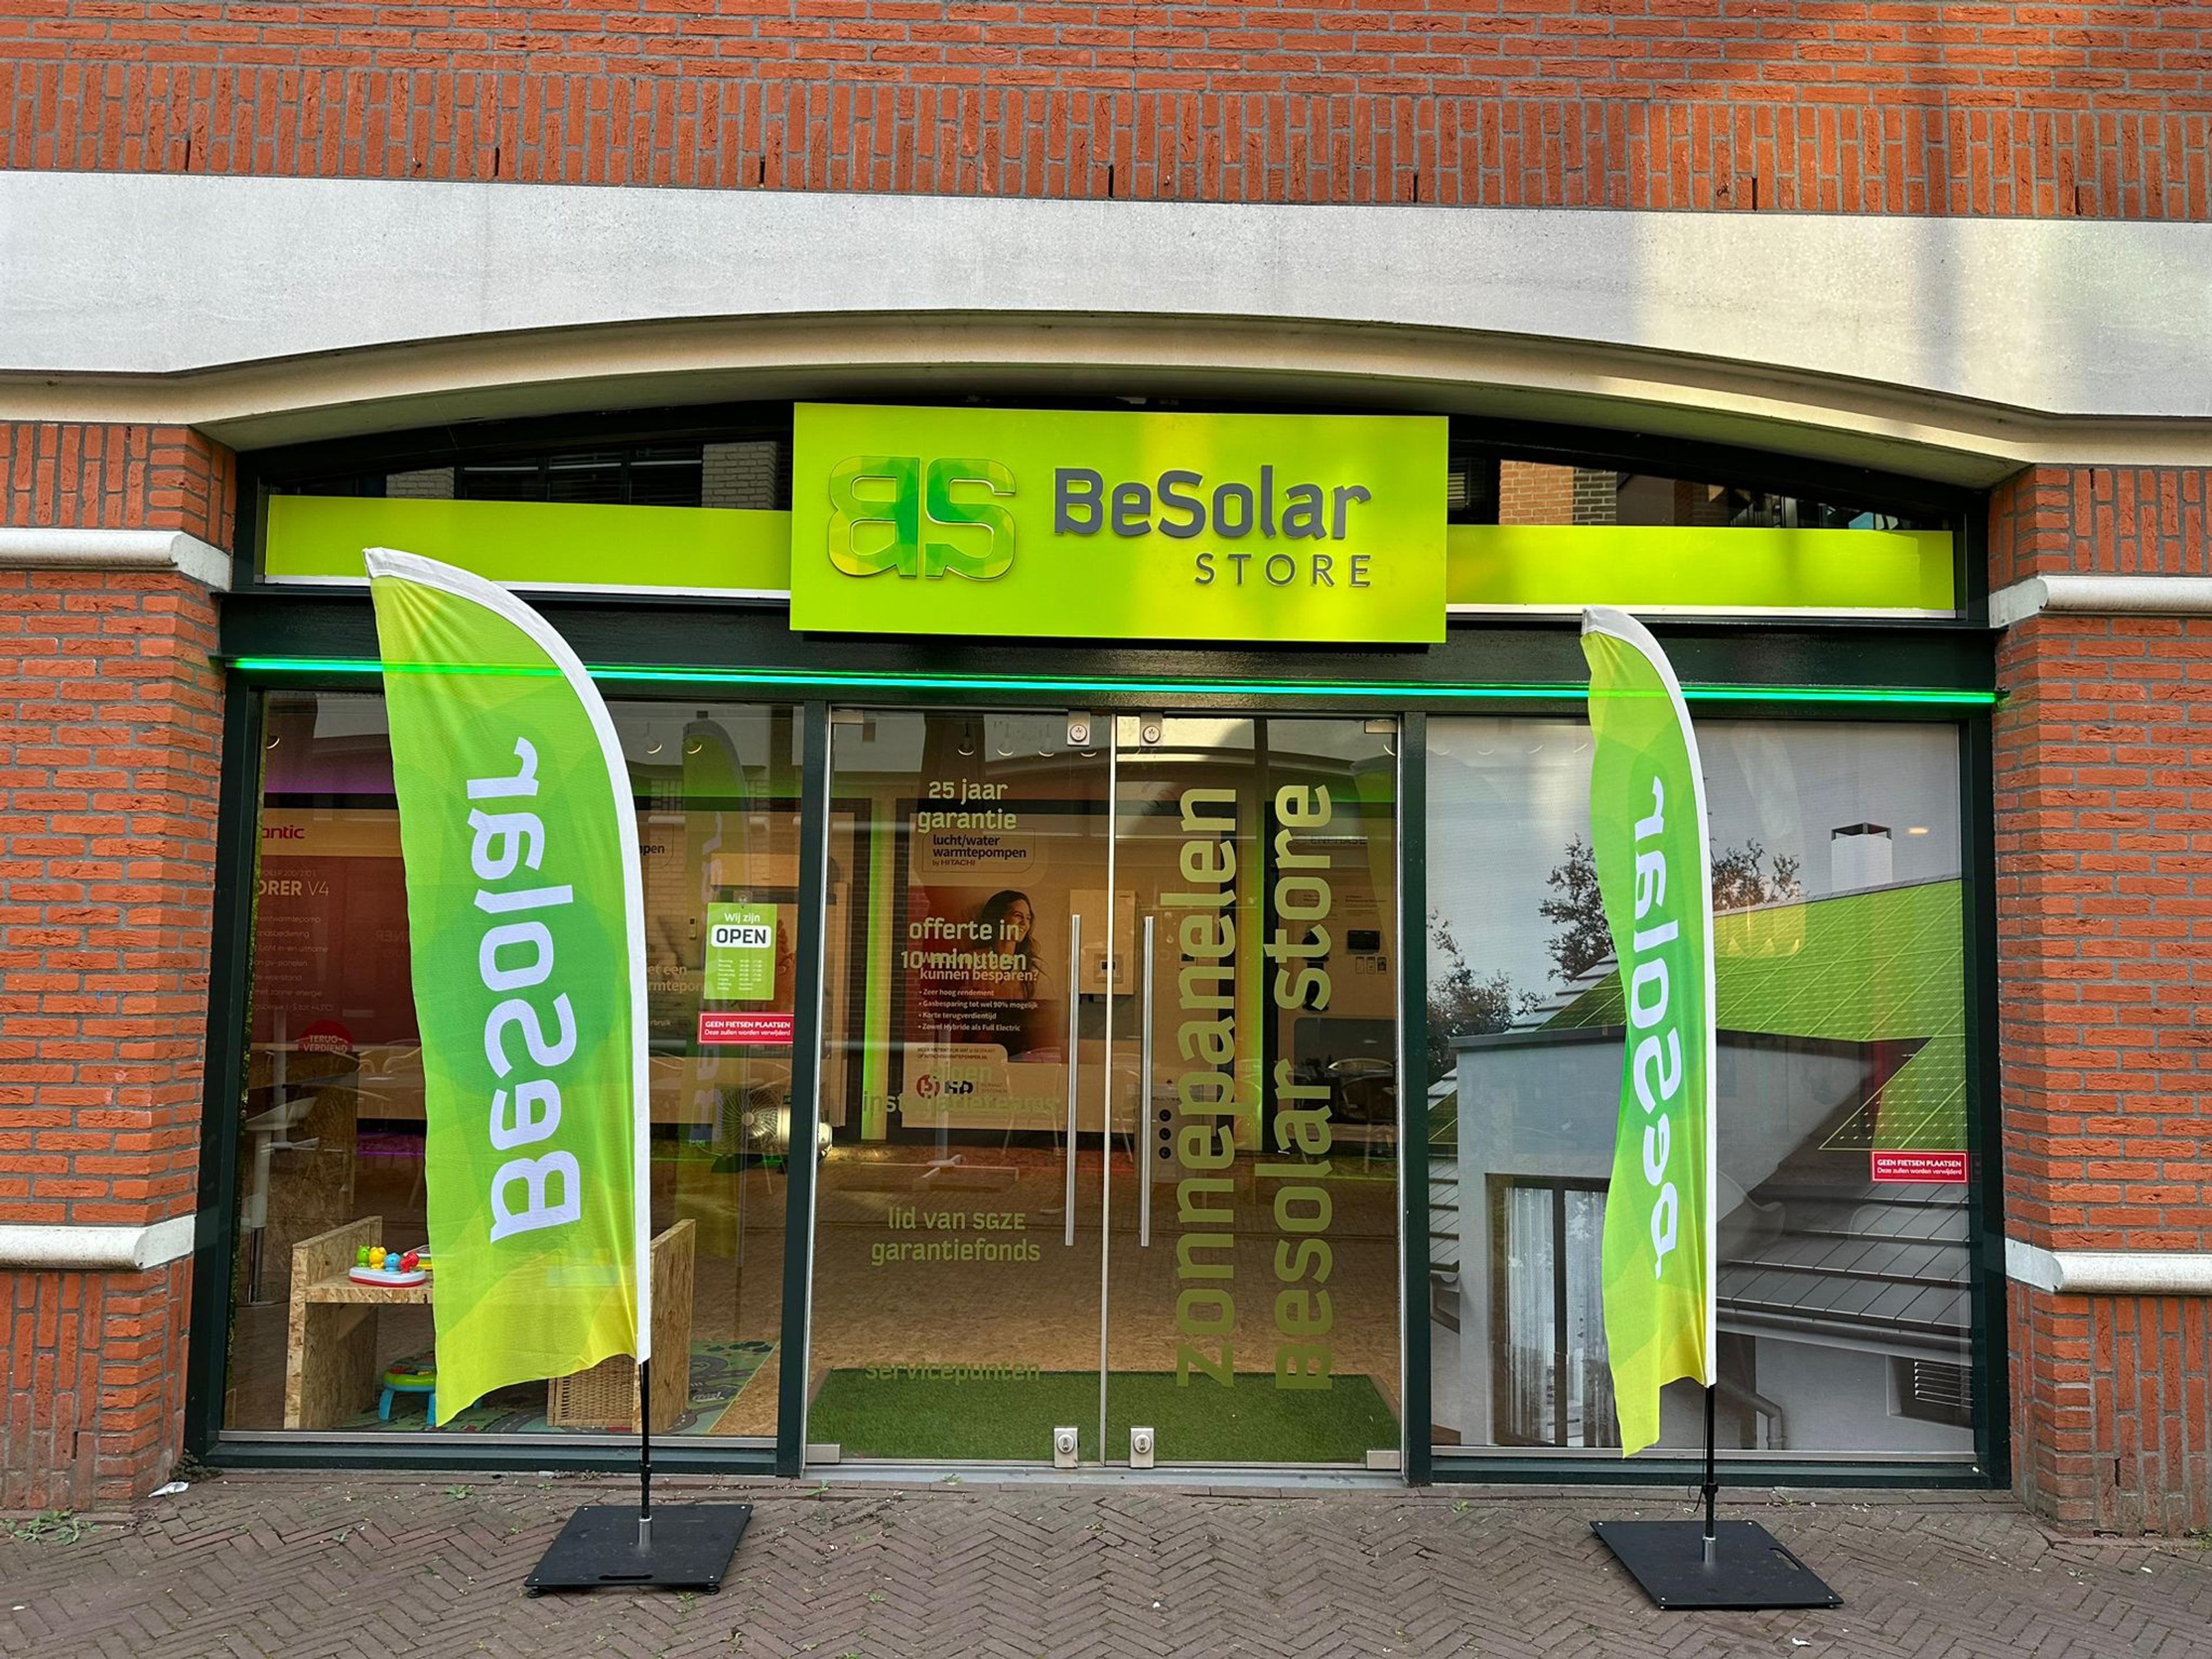 BeSolar Store Oud-Beijerland